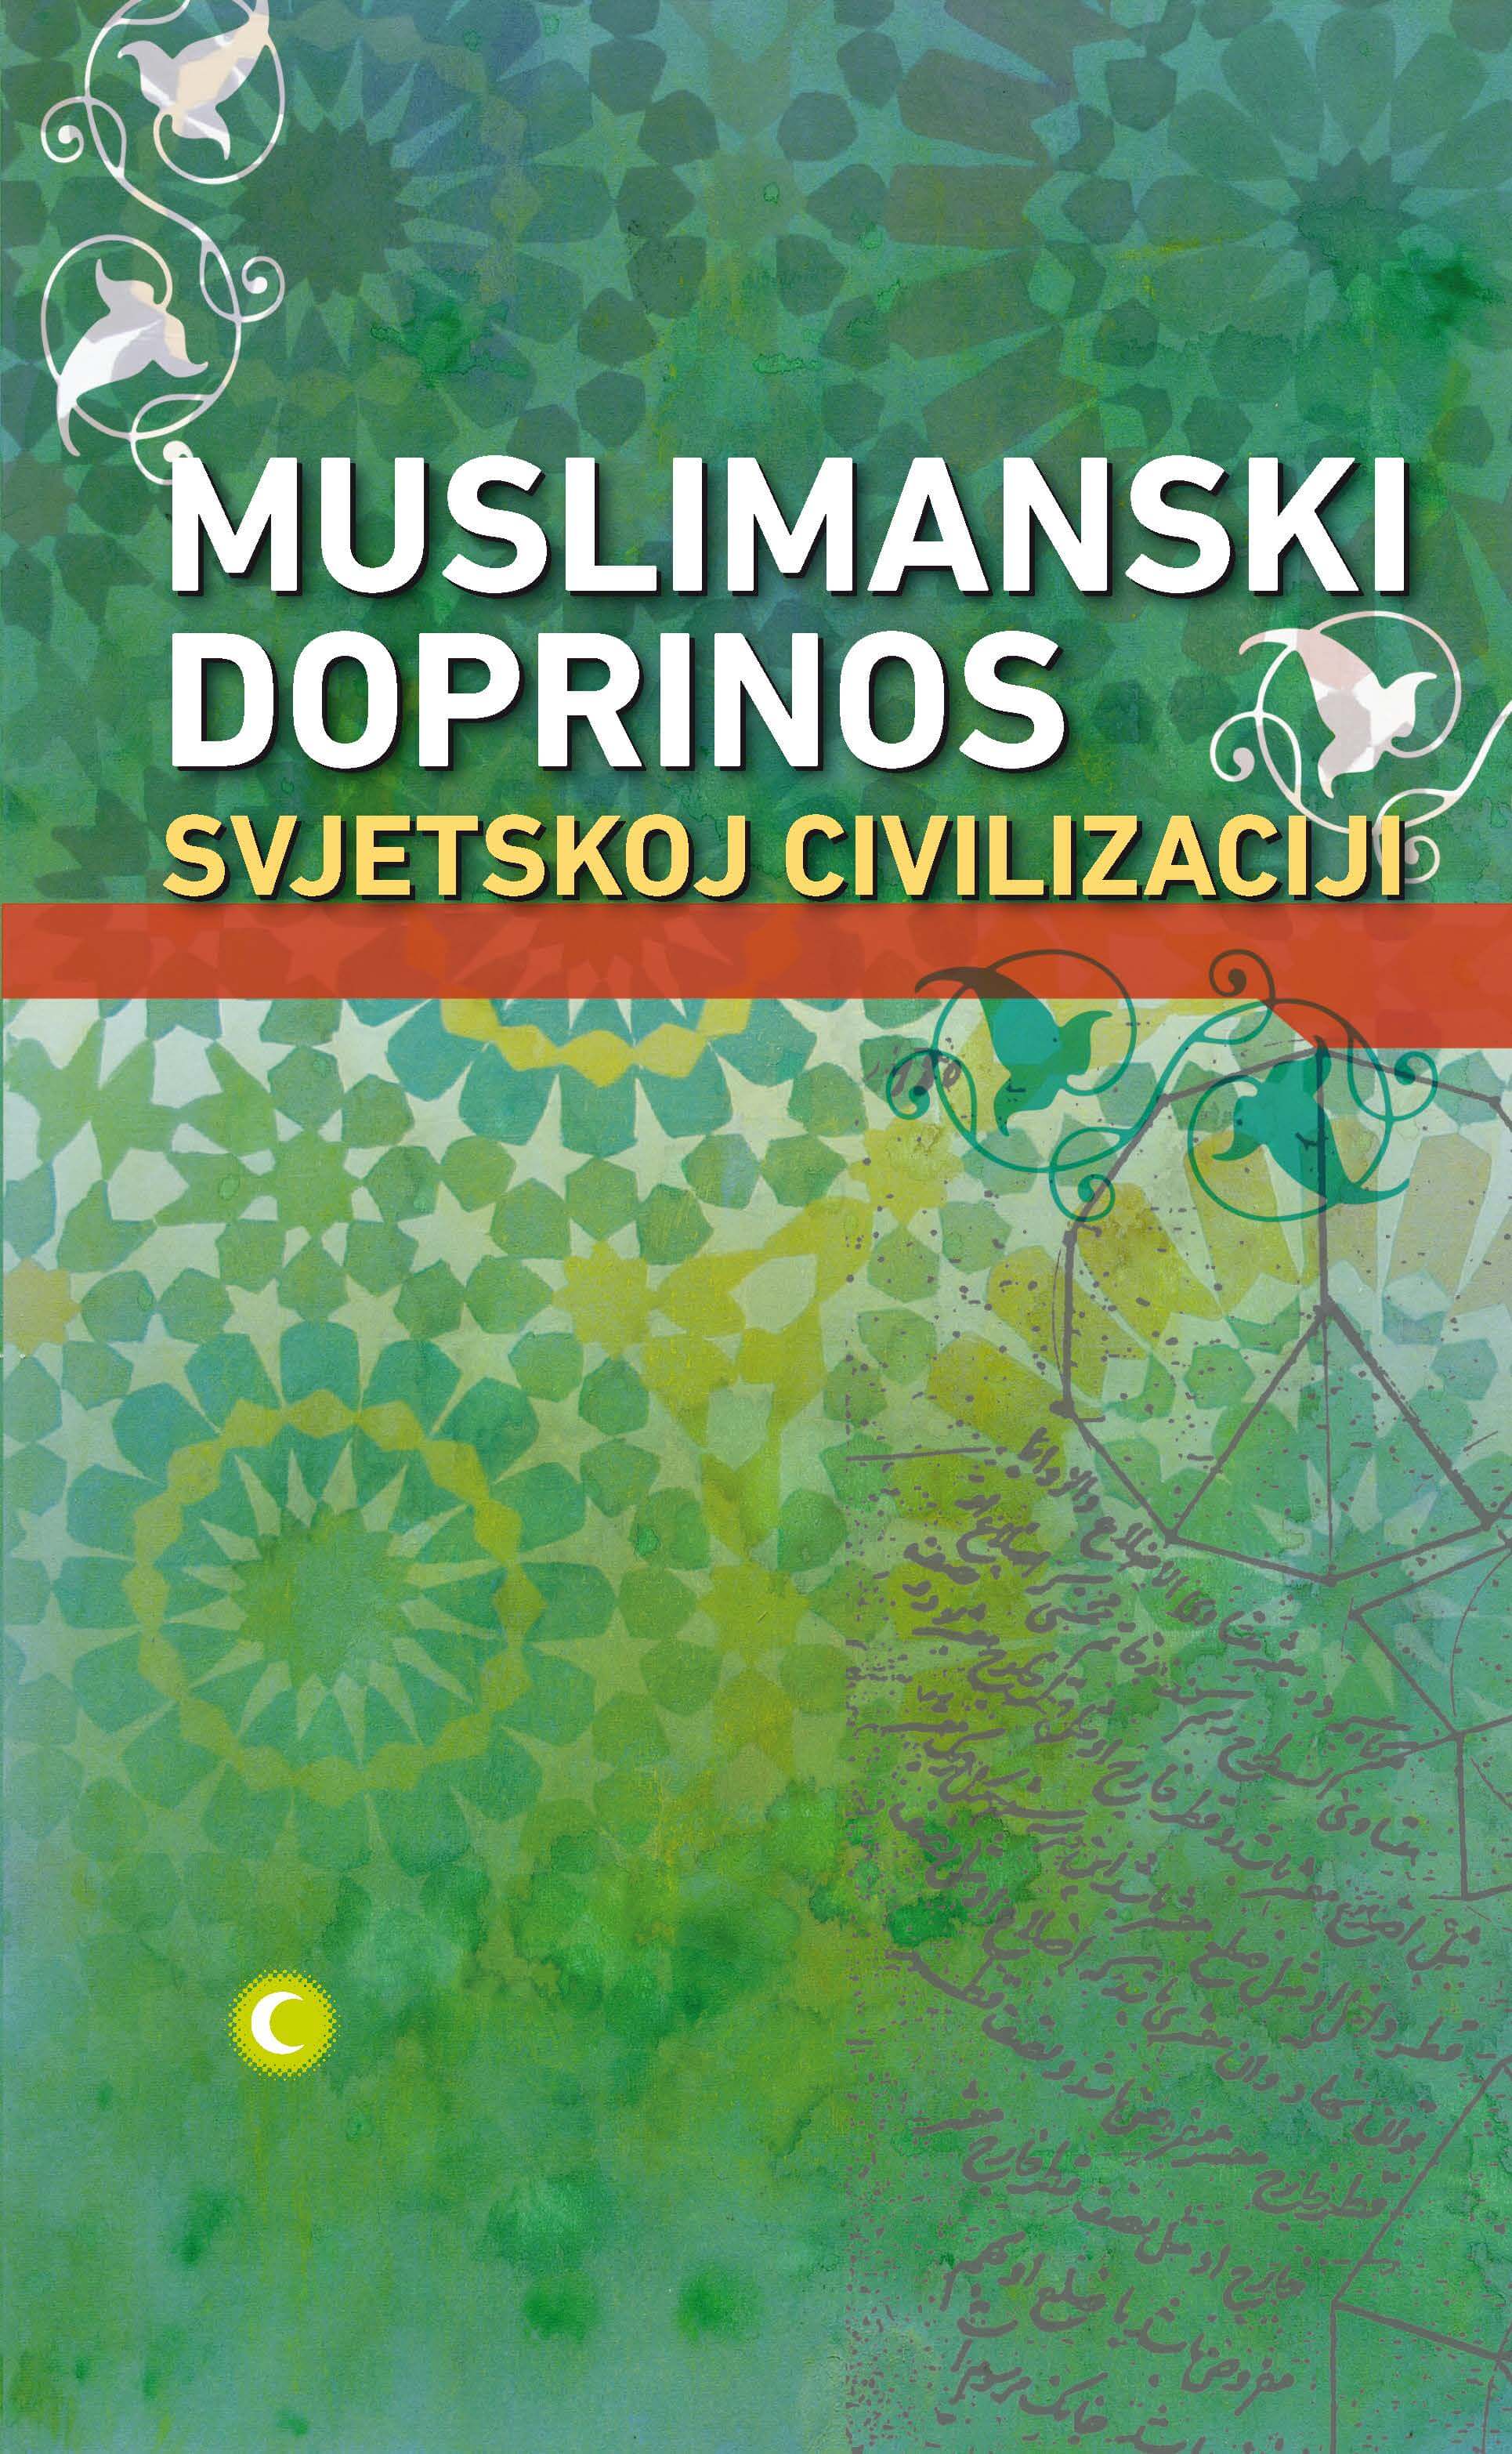 (Bosnian Language) Muslimanski doprinos svjetskoj civilizaciji (Muslim Contributions to World Civilization)